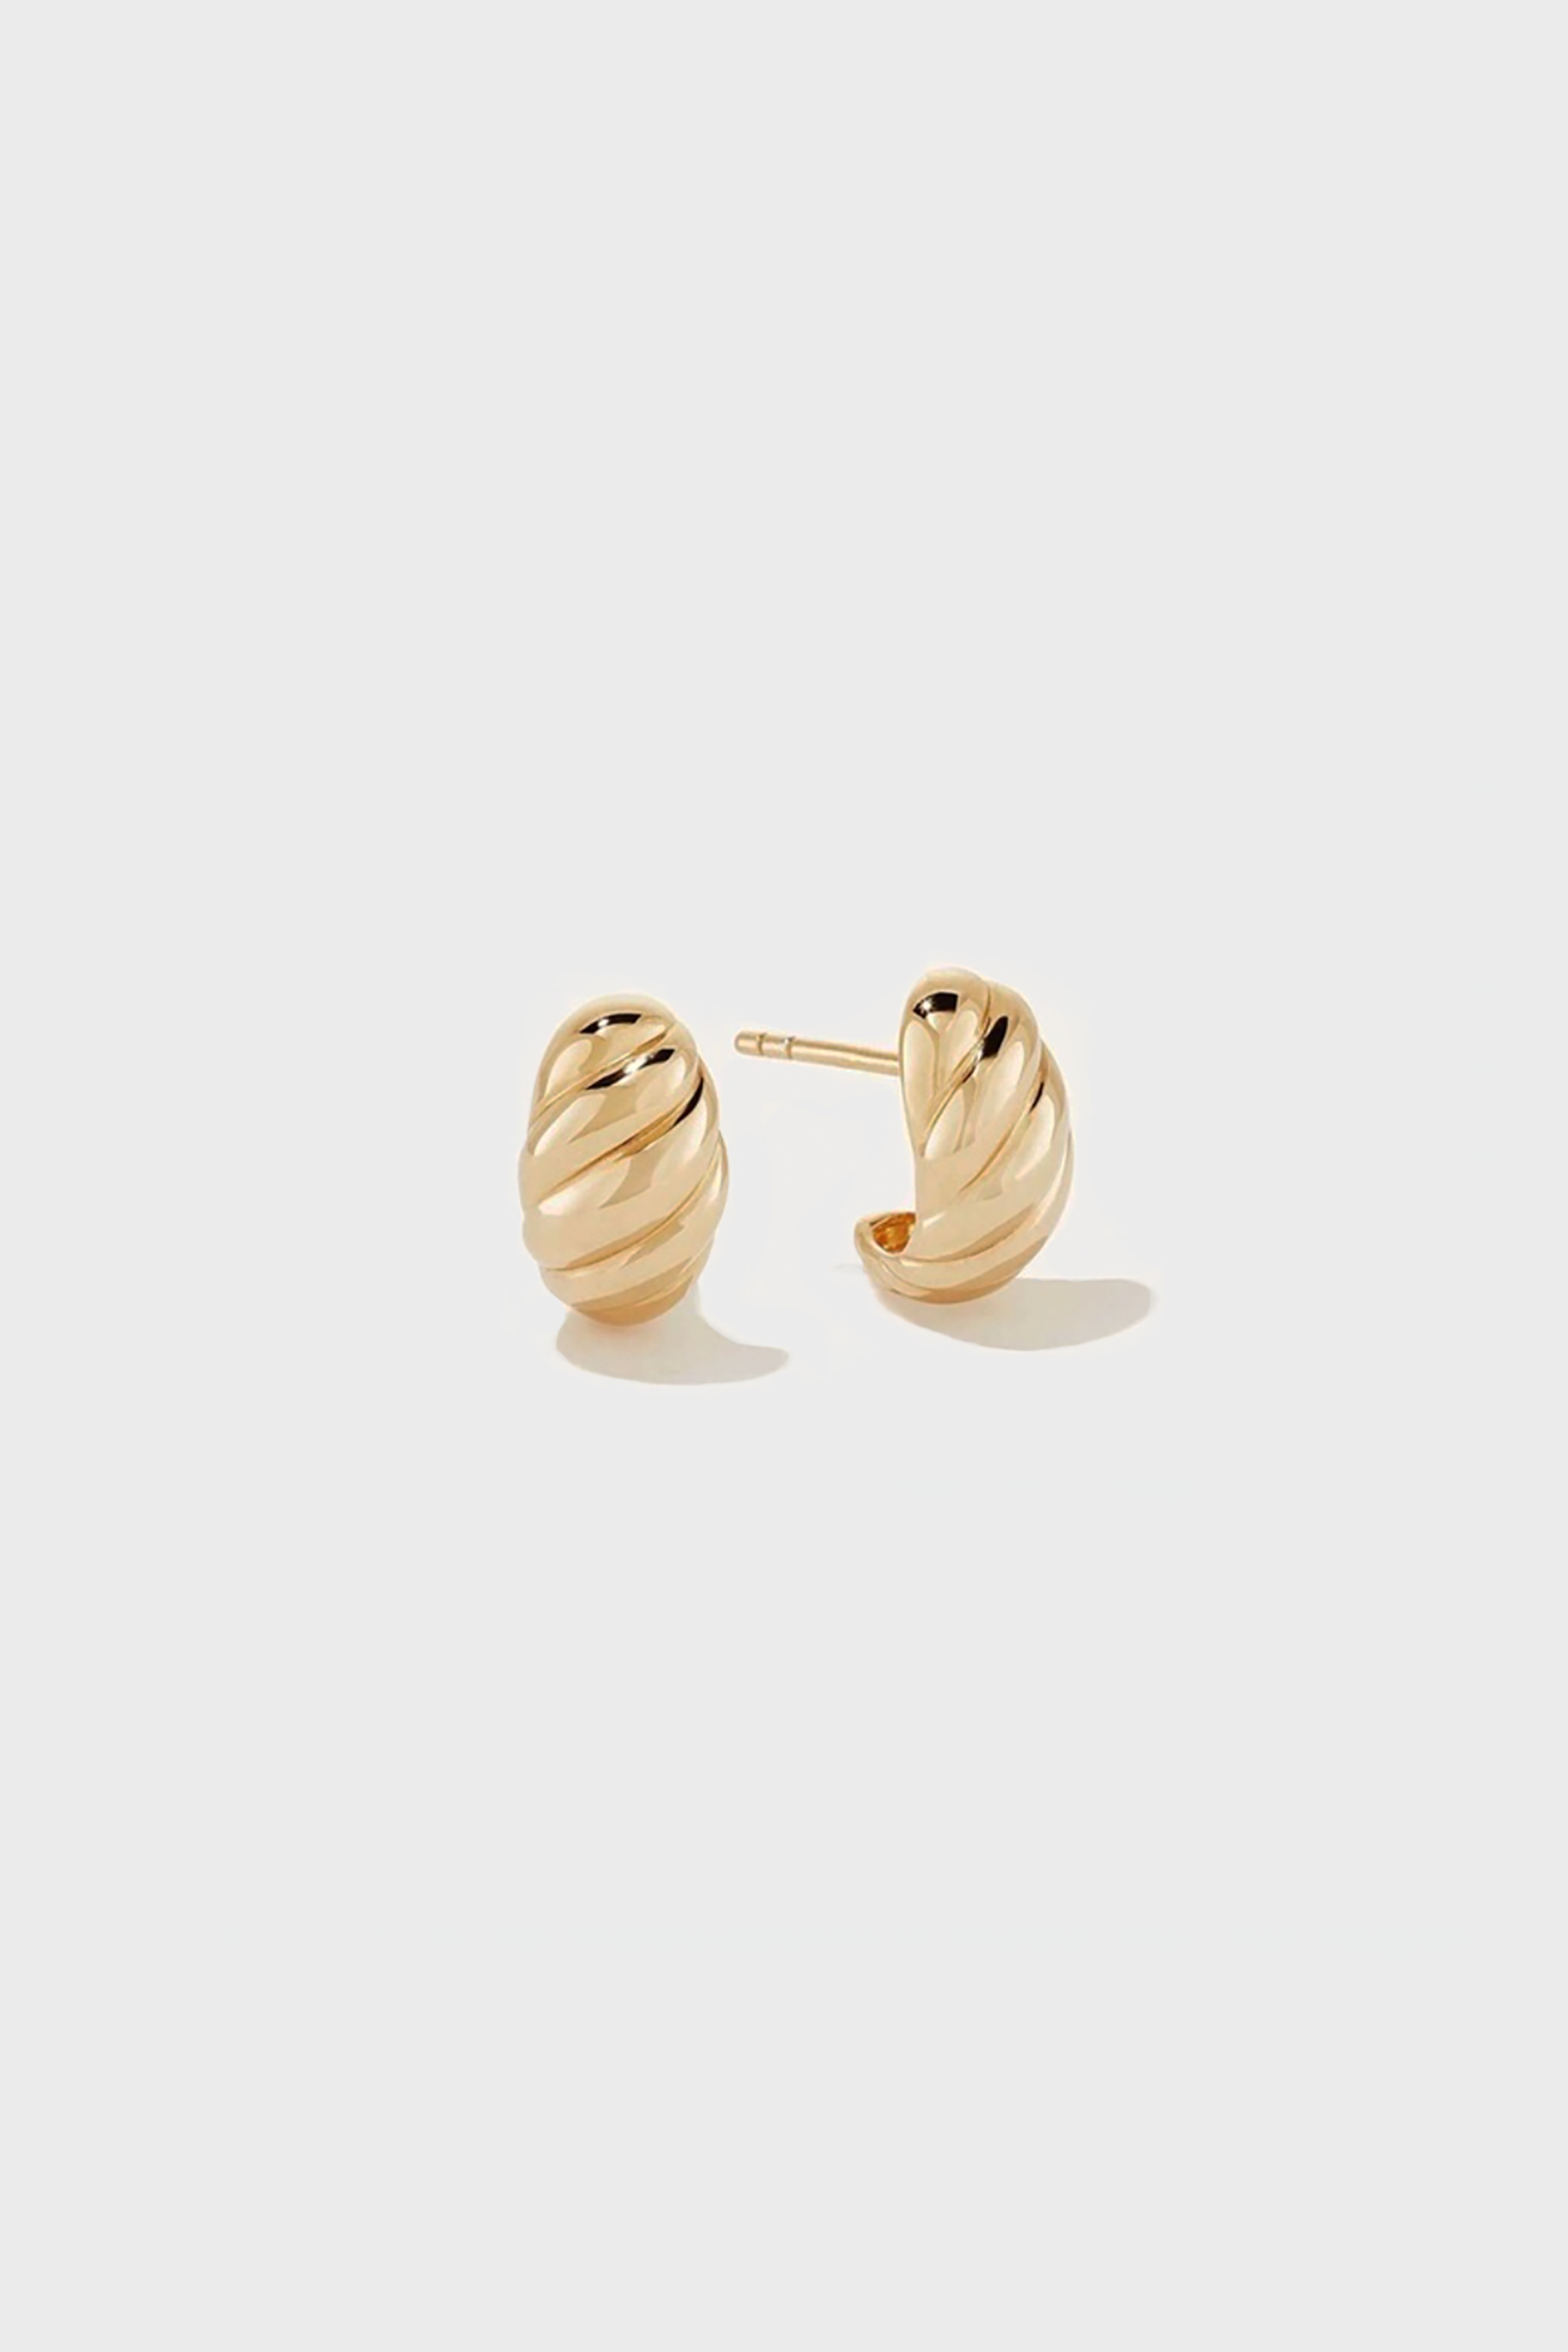 Baby Croissant Hoop Earrings in Gold